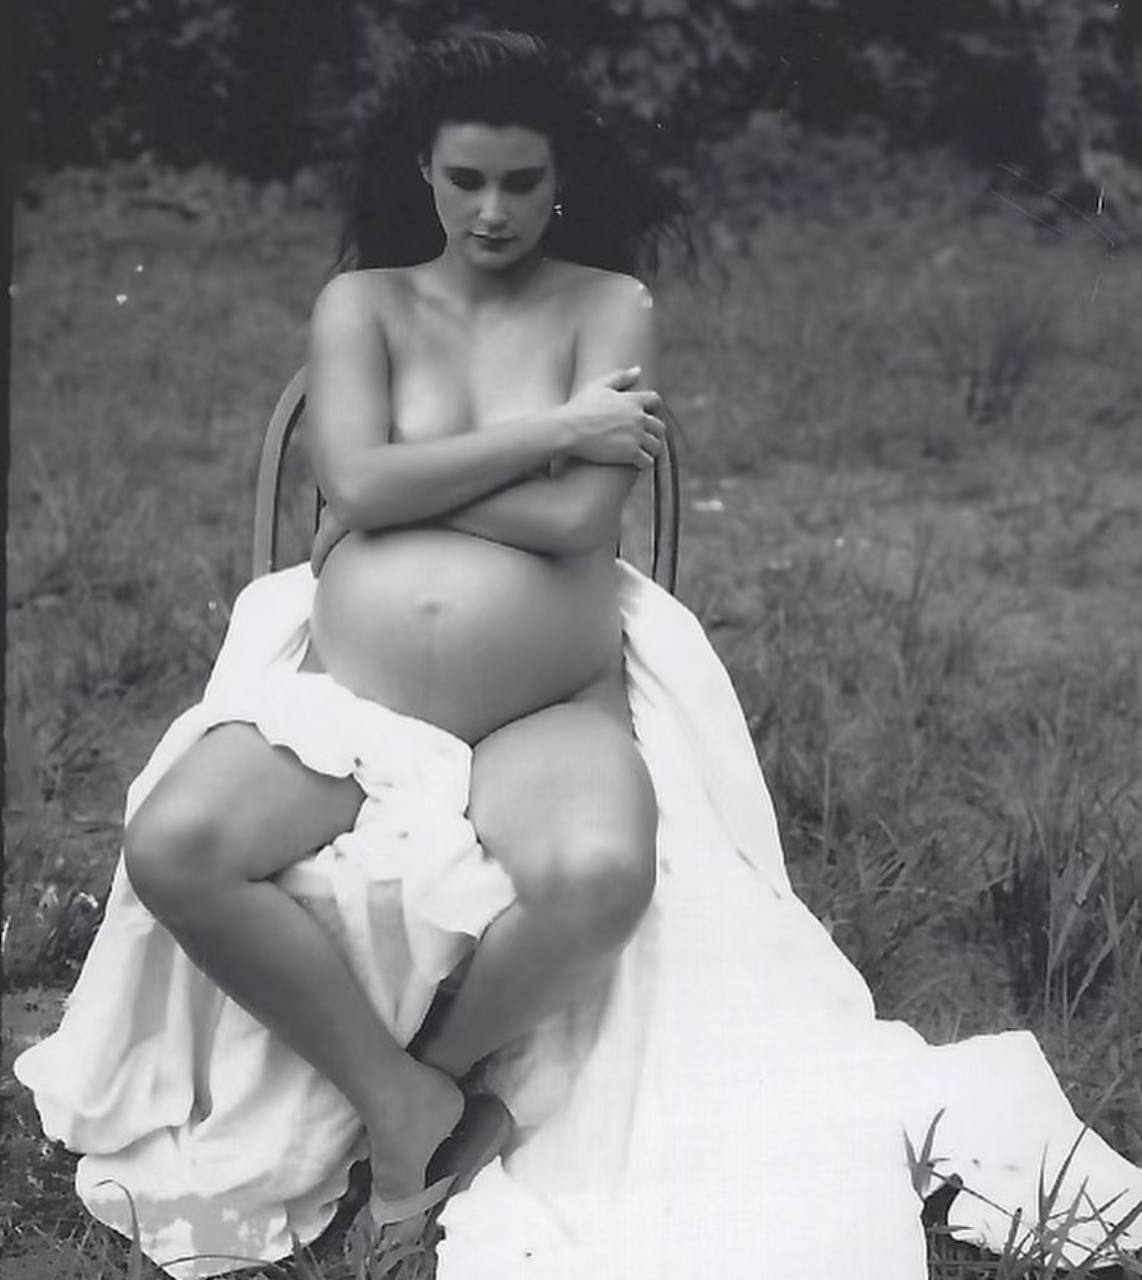 Деми Мур опубликовала фото обнаженной дочери на последнем месяце беременности. ТОП фото голых и беременных знаменитостей на обложках глянца: от Деми Мур до Ксении Собчак